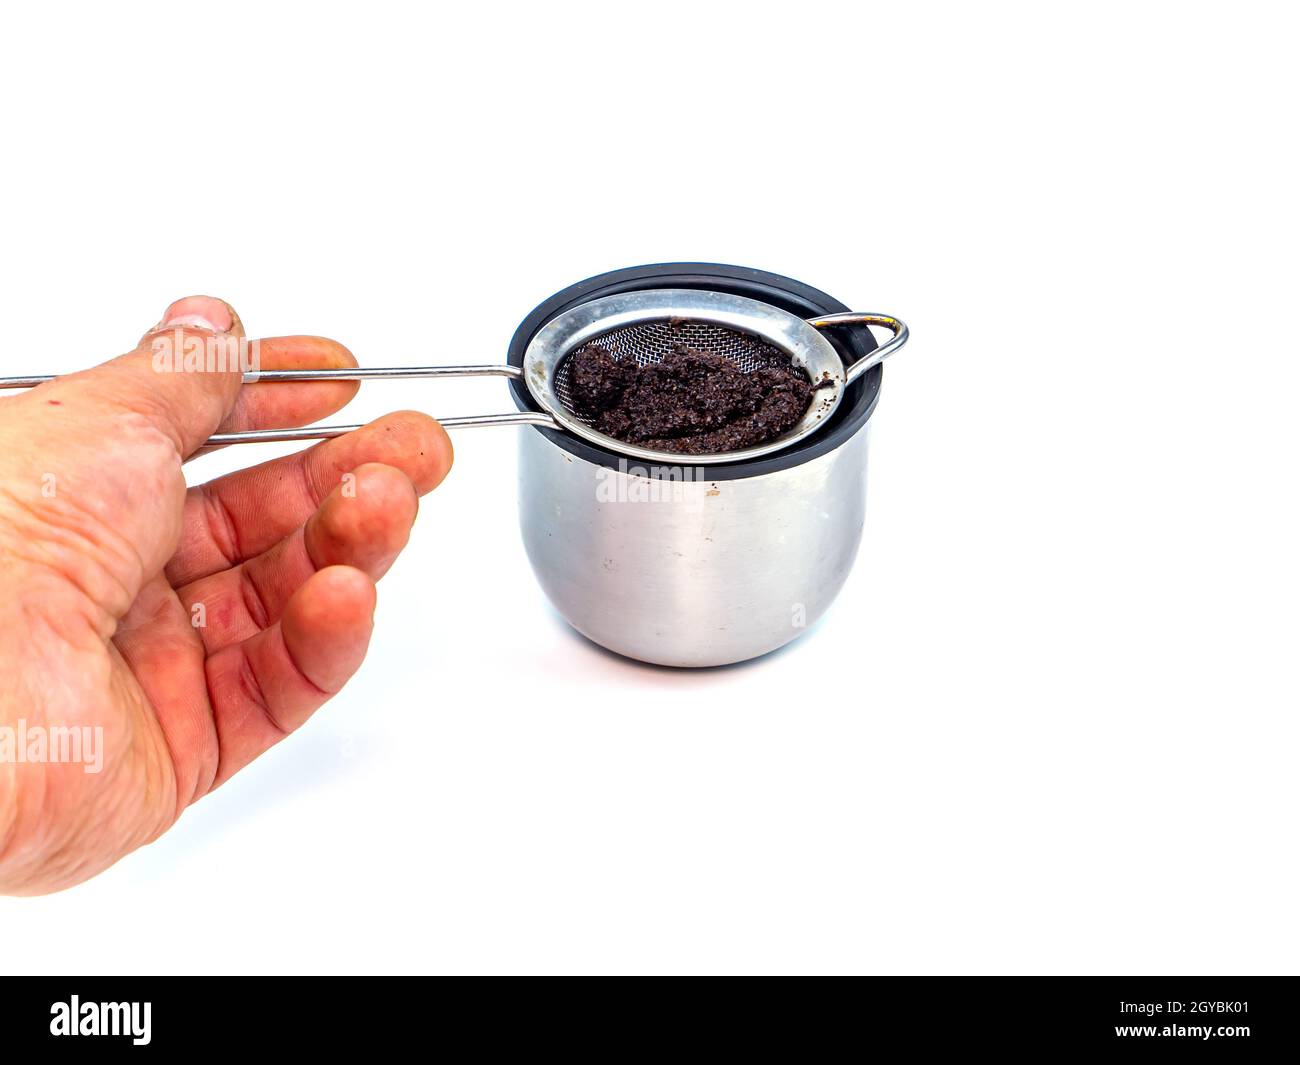 Un colador para filtrar el café o el té se vierte en una taza